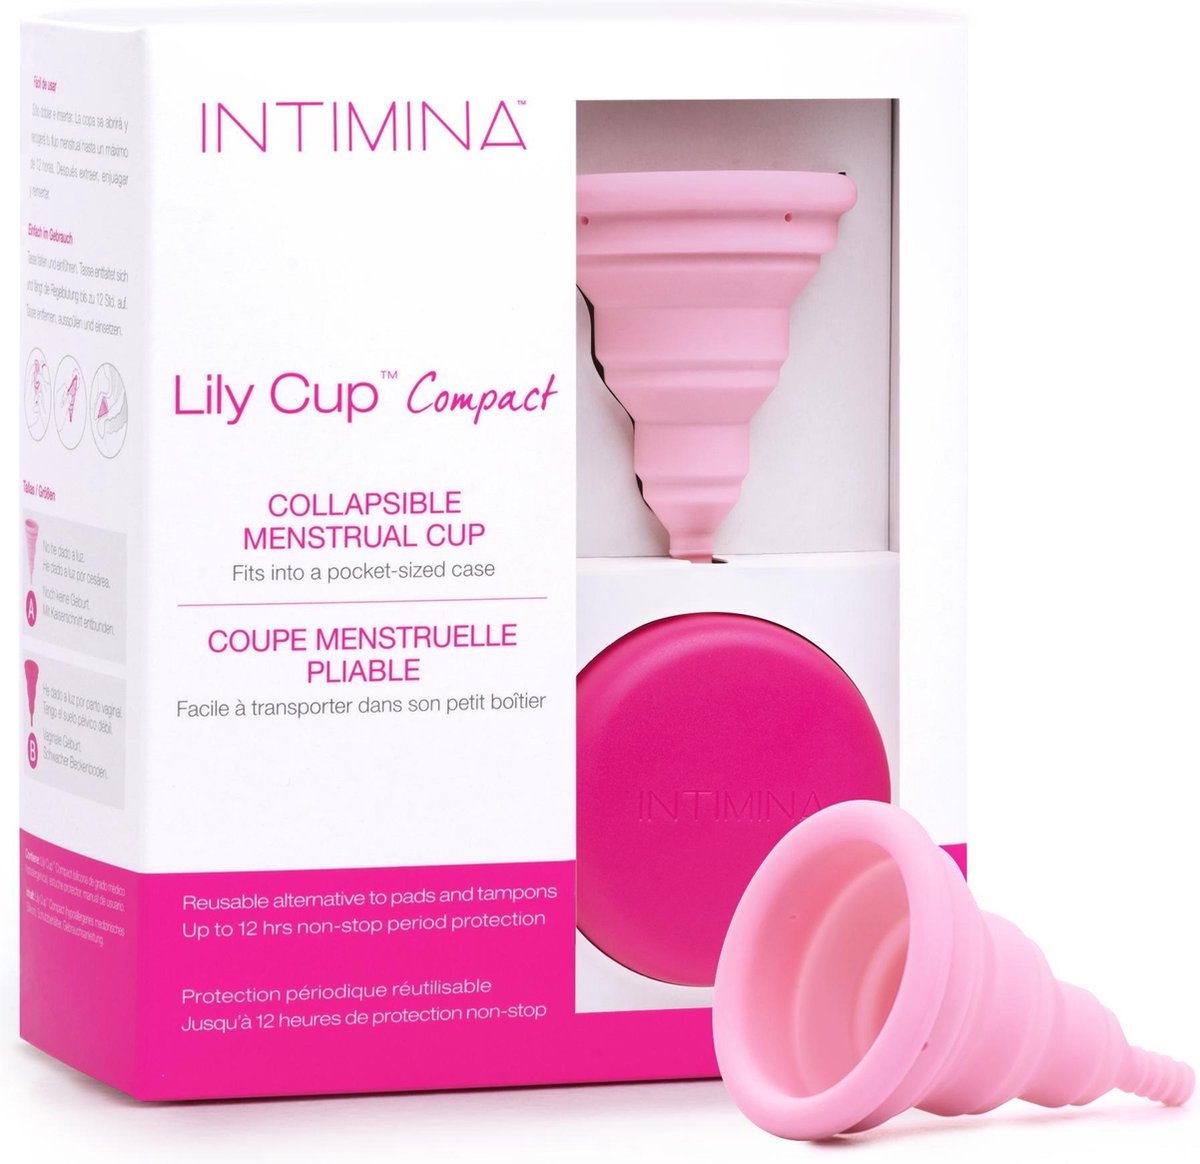 Intimina - Lily Compact Cup maat A - kleine menstruatiecup met plat opvouwbaar compact design - Intimina